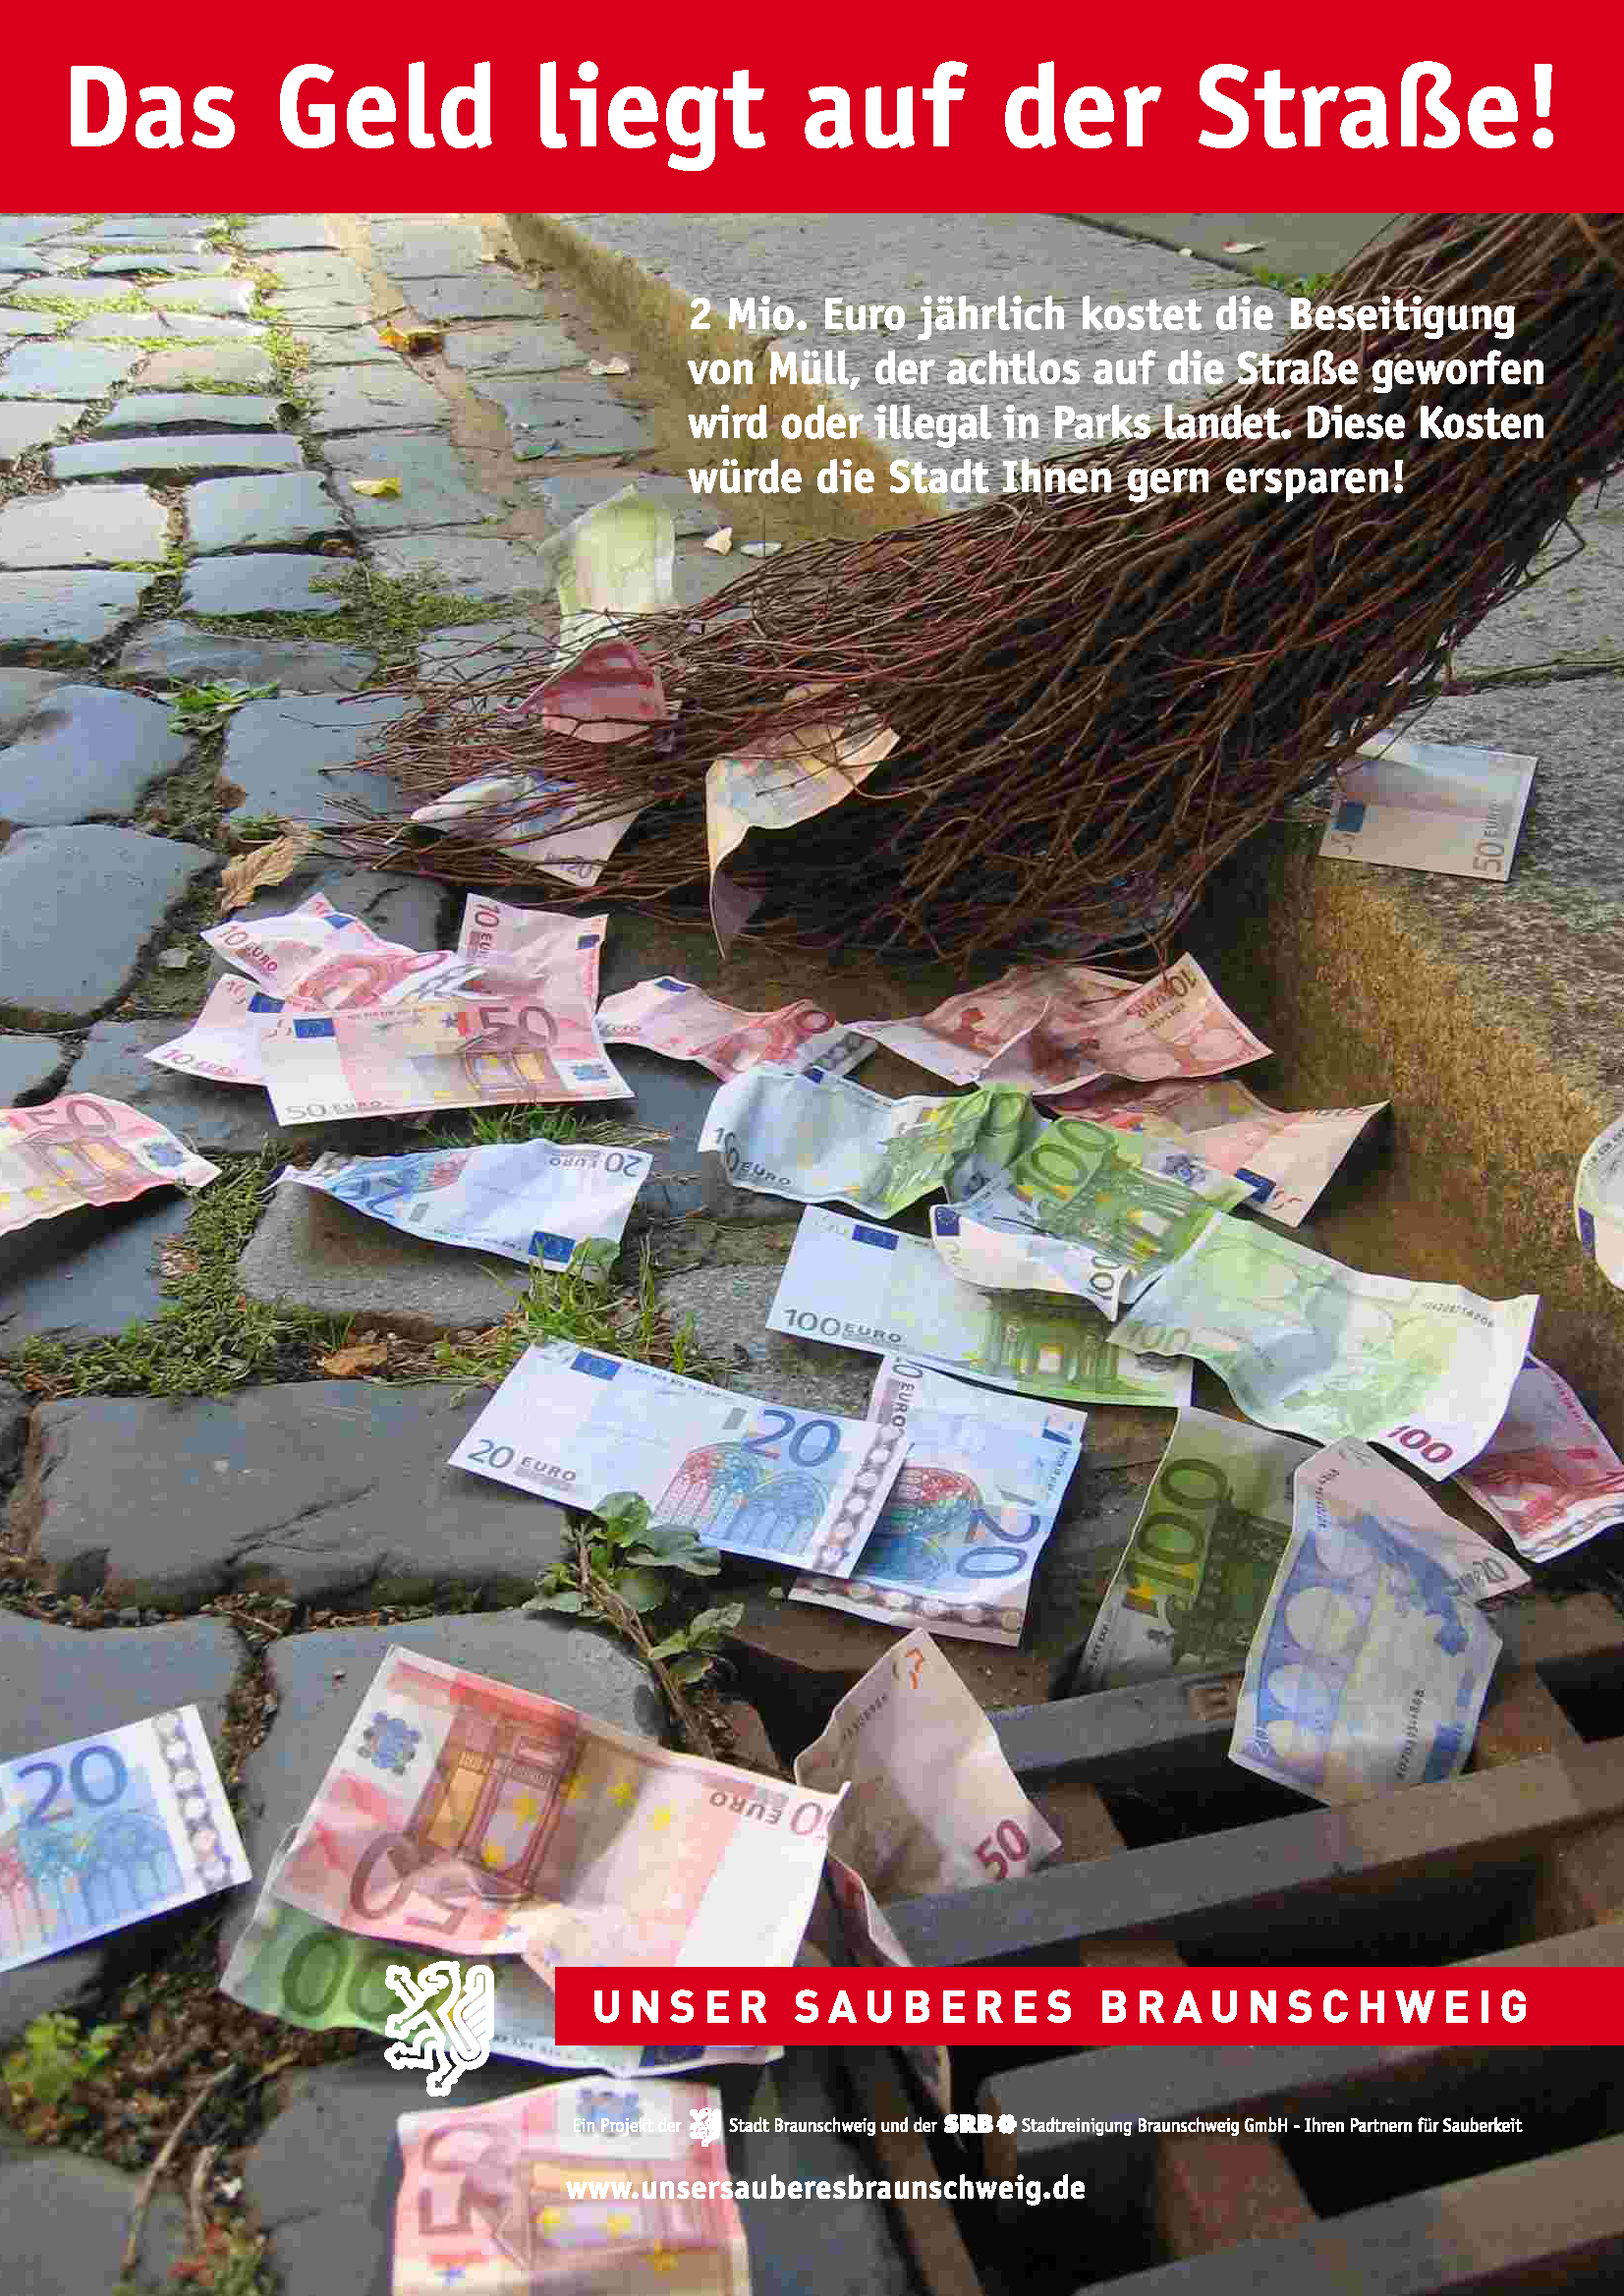 2.000.000 € kostet jährlich die Beseitigung von achtlos weggeworfenem Abfall in Braunschweig. Die Kosten tragen die Bürgerinnen und Bürger.